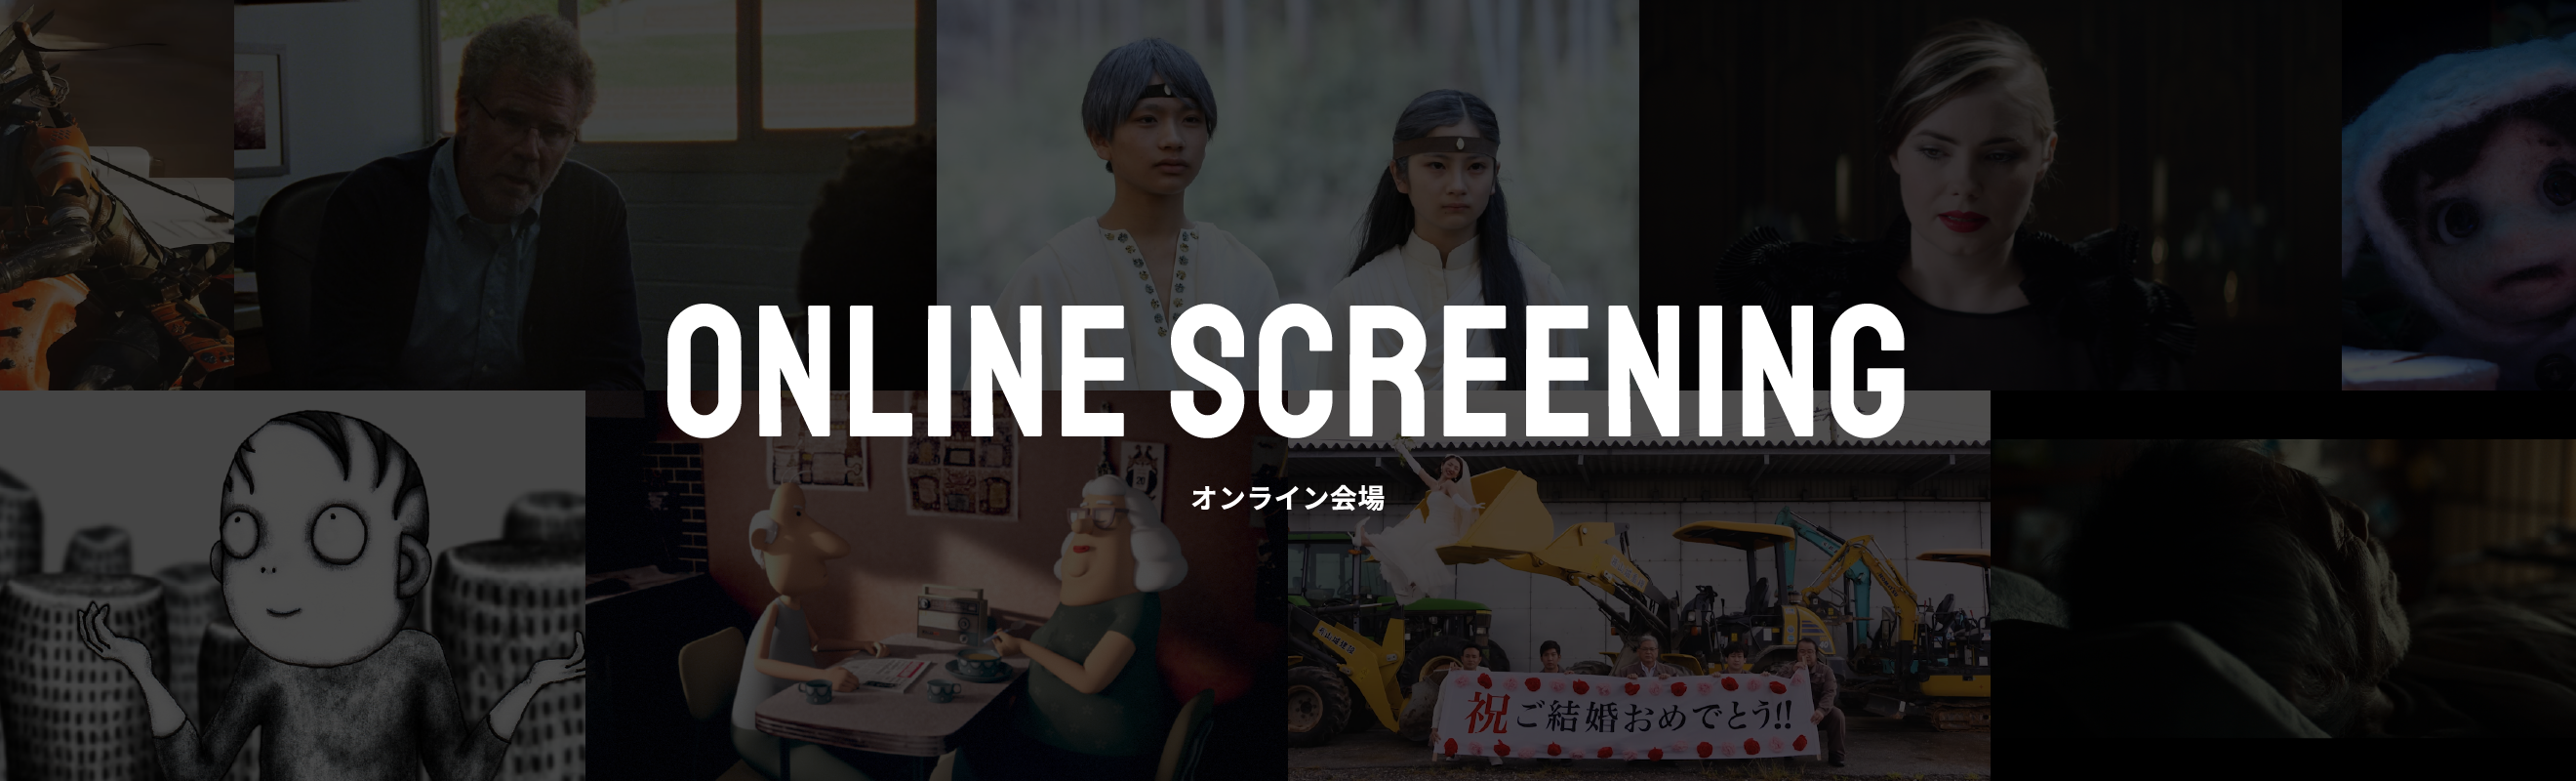 Online Screen